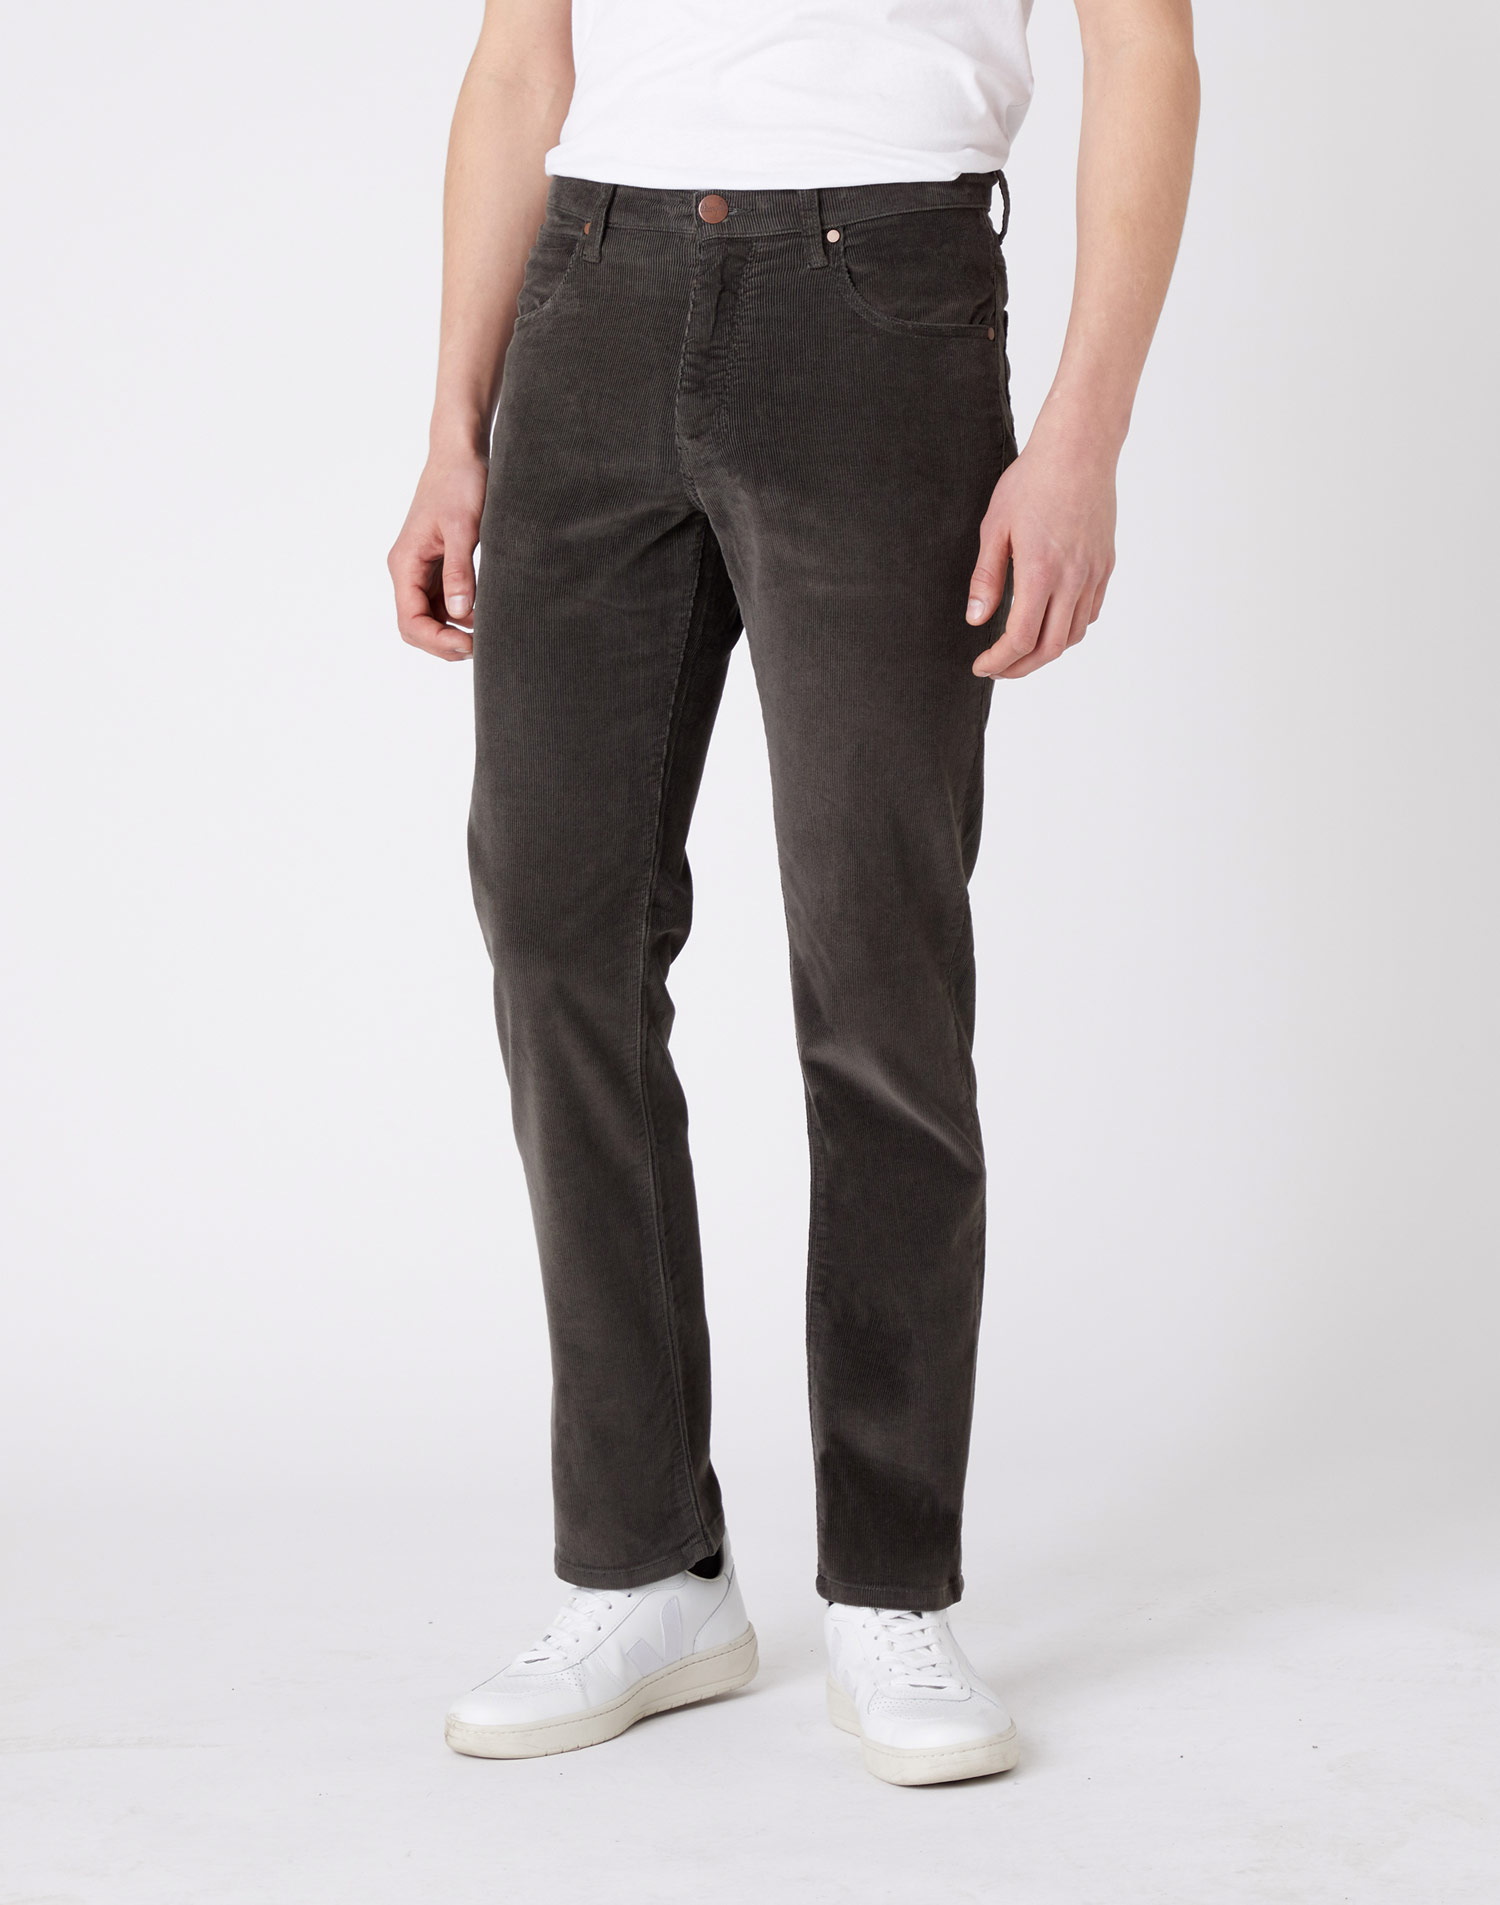 Wrangler Arizona regular pantalons texans de pana d'home W12OEC221 caqui fosc